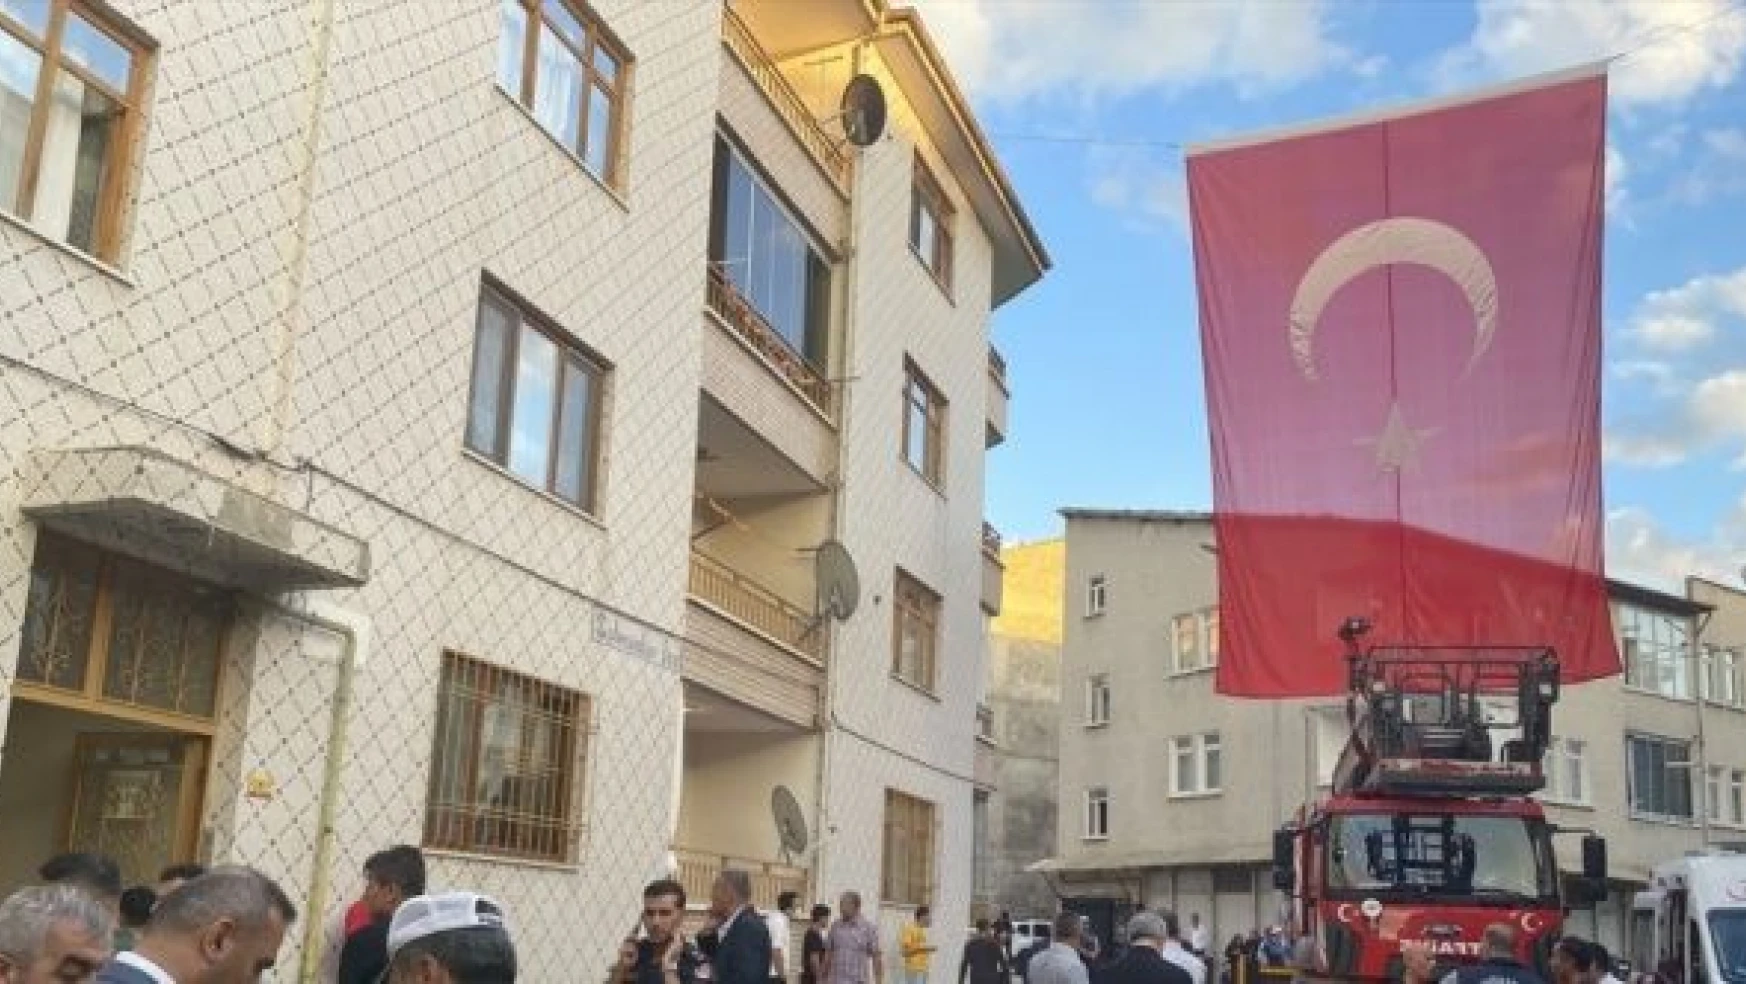 Şehit Piyade Üsteğmen Serkan Erkuş'un Malatya'daki ailesine şehadet haberi ulaştı